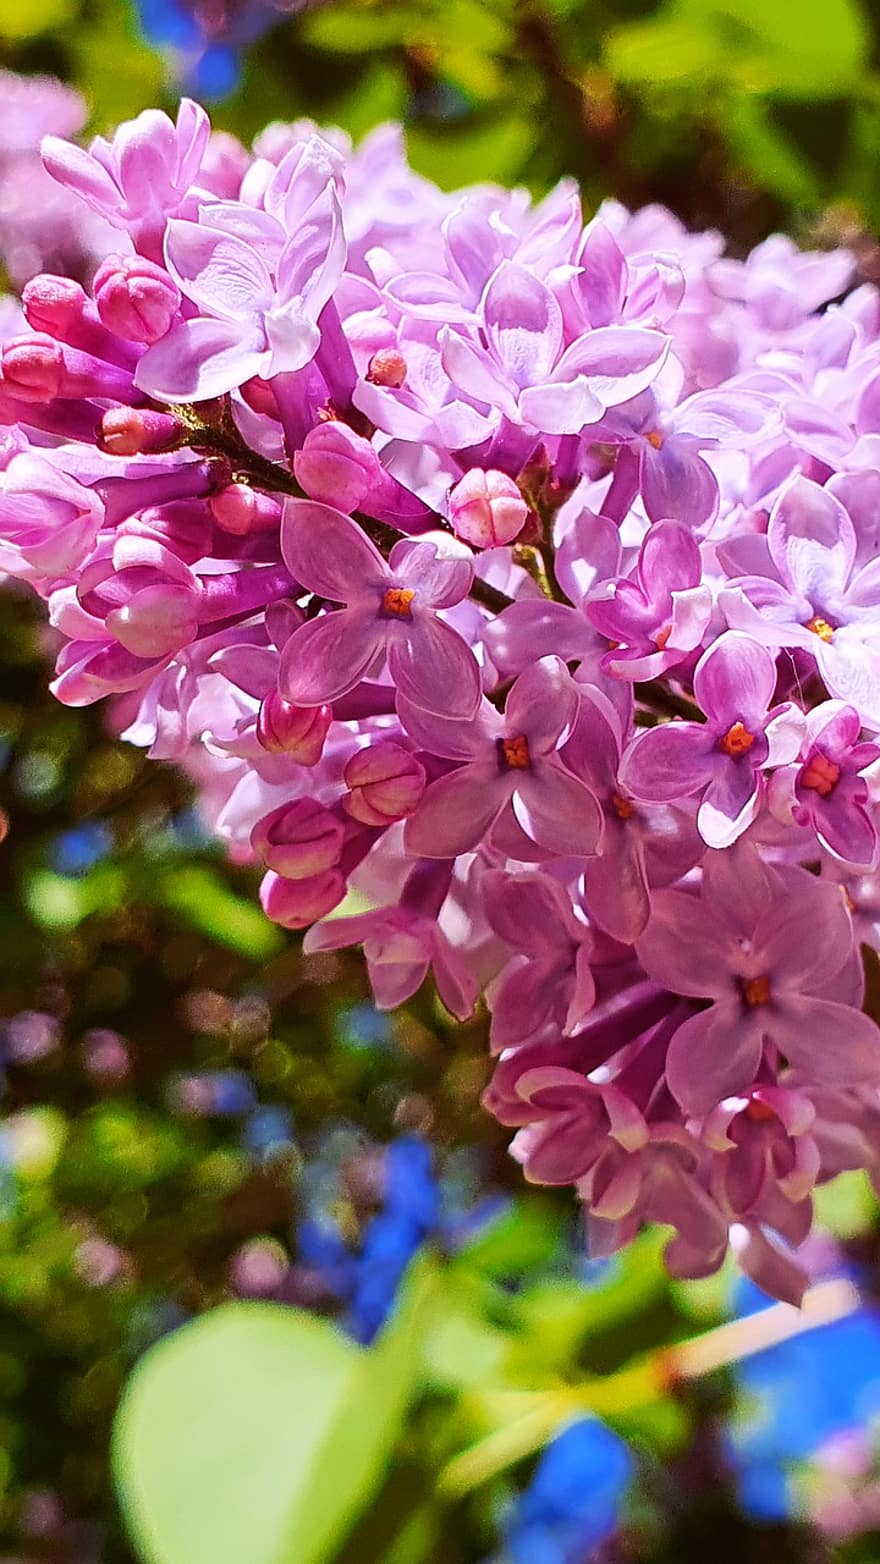 Lilacs, Flowers, Purple Flowers, Petals, Purple Petals, Bloom, Blossom, Flora, Inflorescence, Garden, Plants